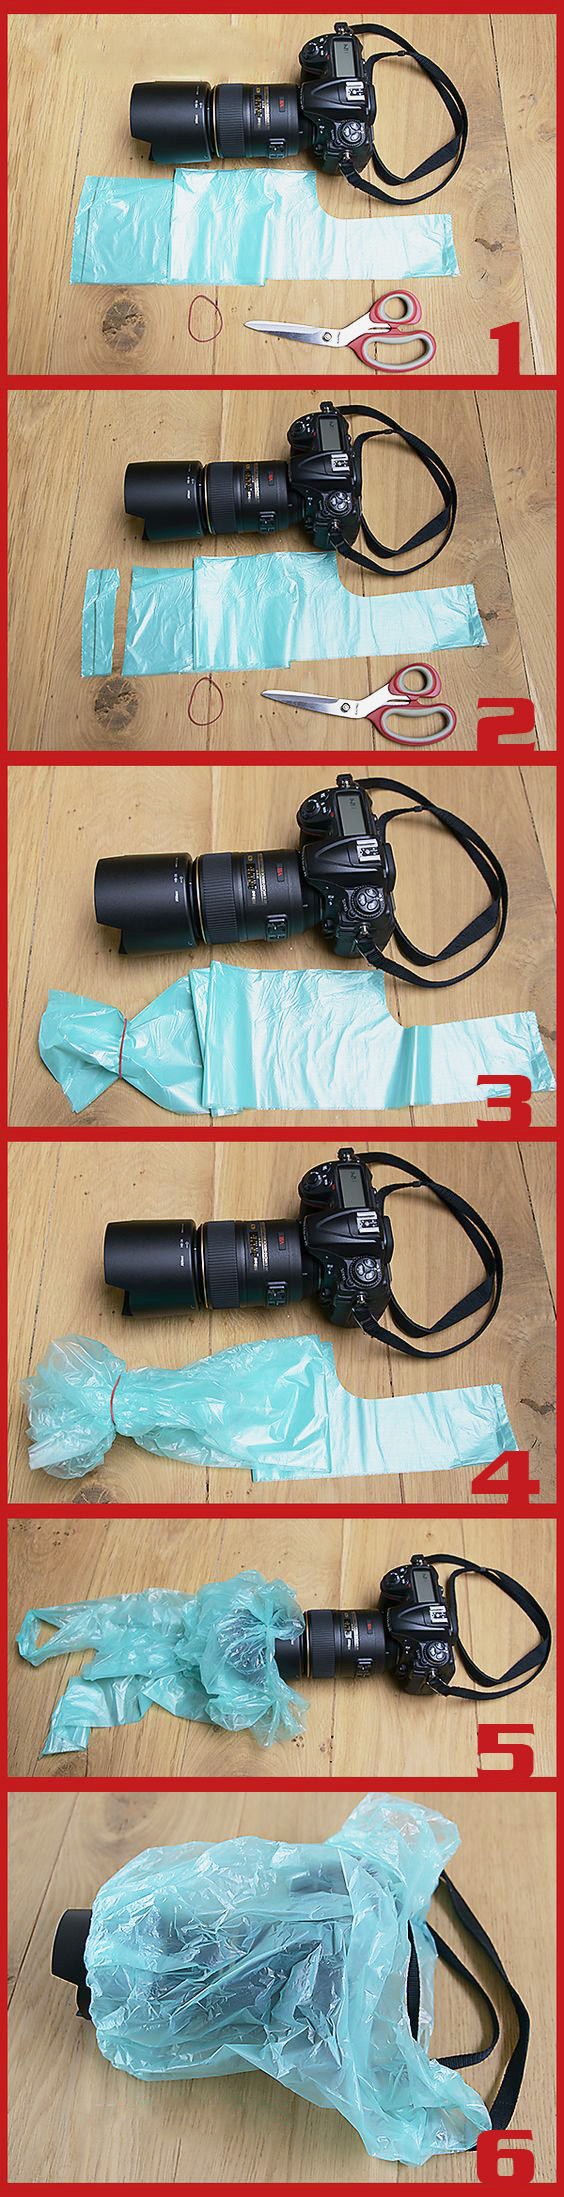 6 Bước đơn giản tự tạo áo mưa máy ảnh khi thời tiết xấu